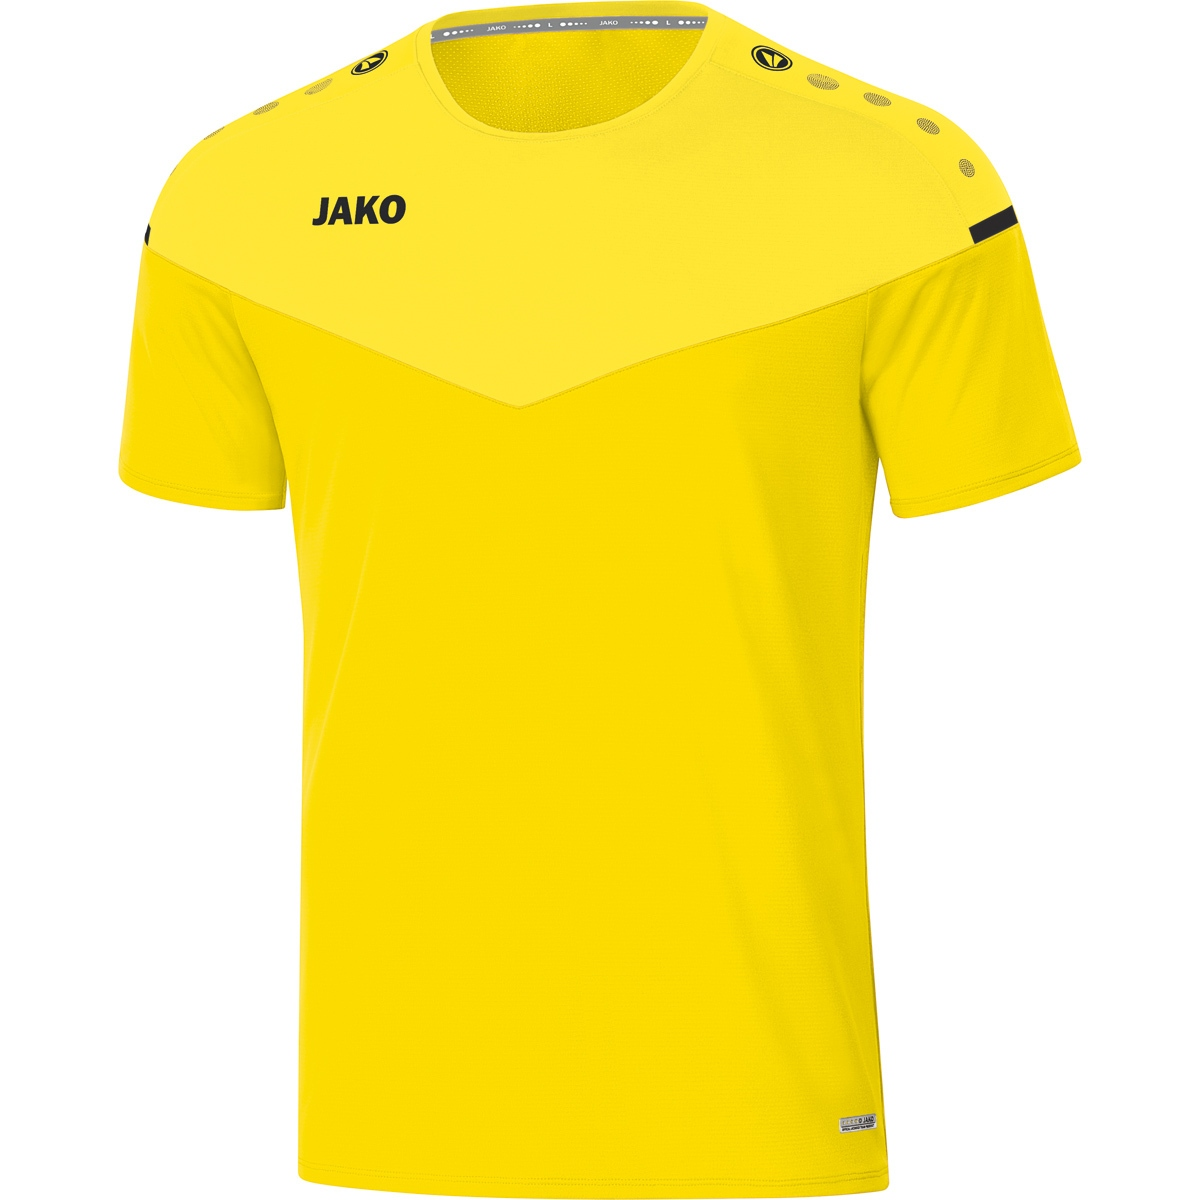 JAKO T-Shirt Champ 2.0 citro/citro 6120 light, Gr. M, Herren